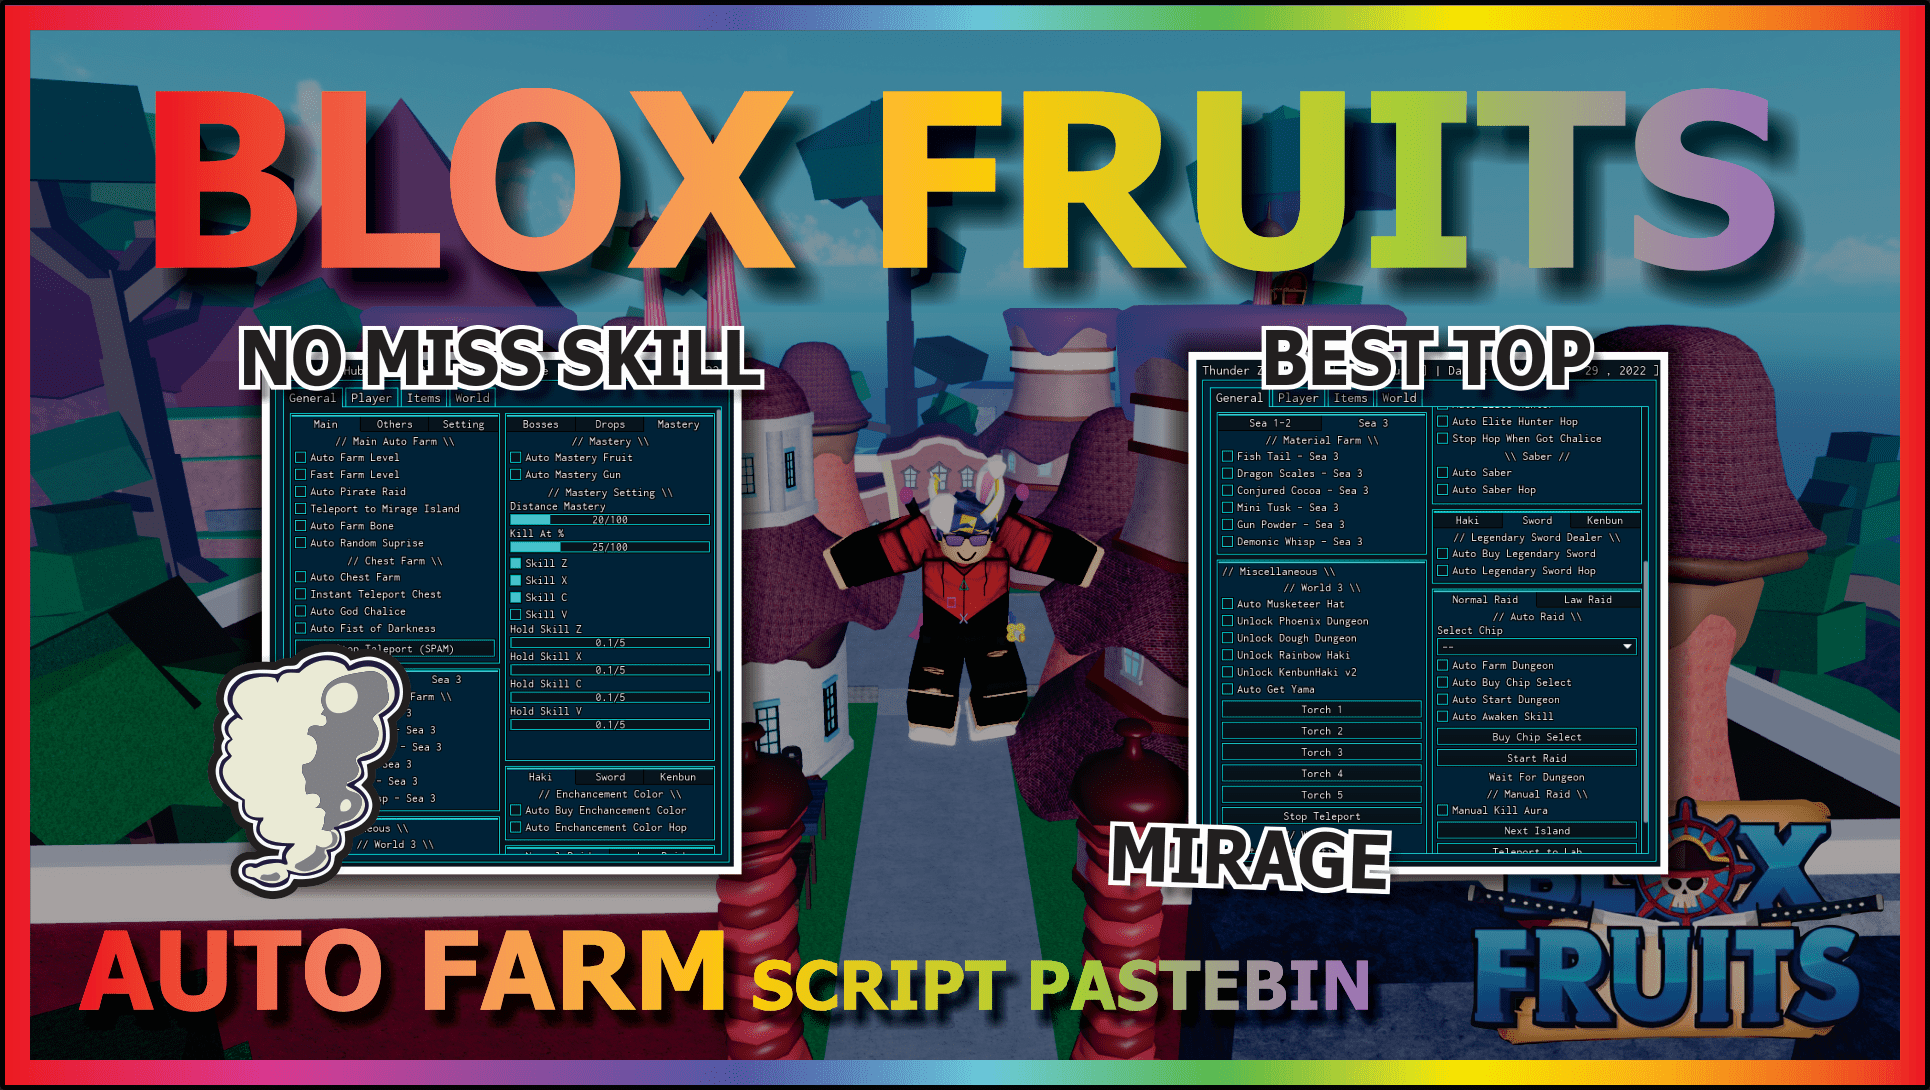 Script Blox Fruit No Key FRUIT RAIN & AUTO FARM, HOHO HUB V3, MOBILE/PC, AUTO RAID